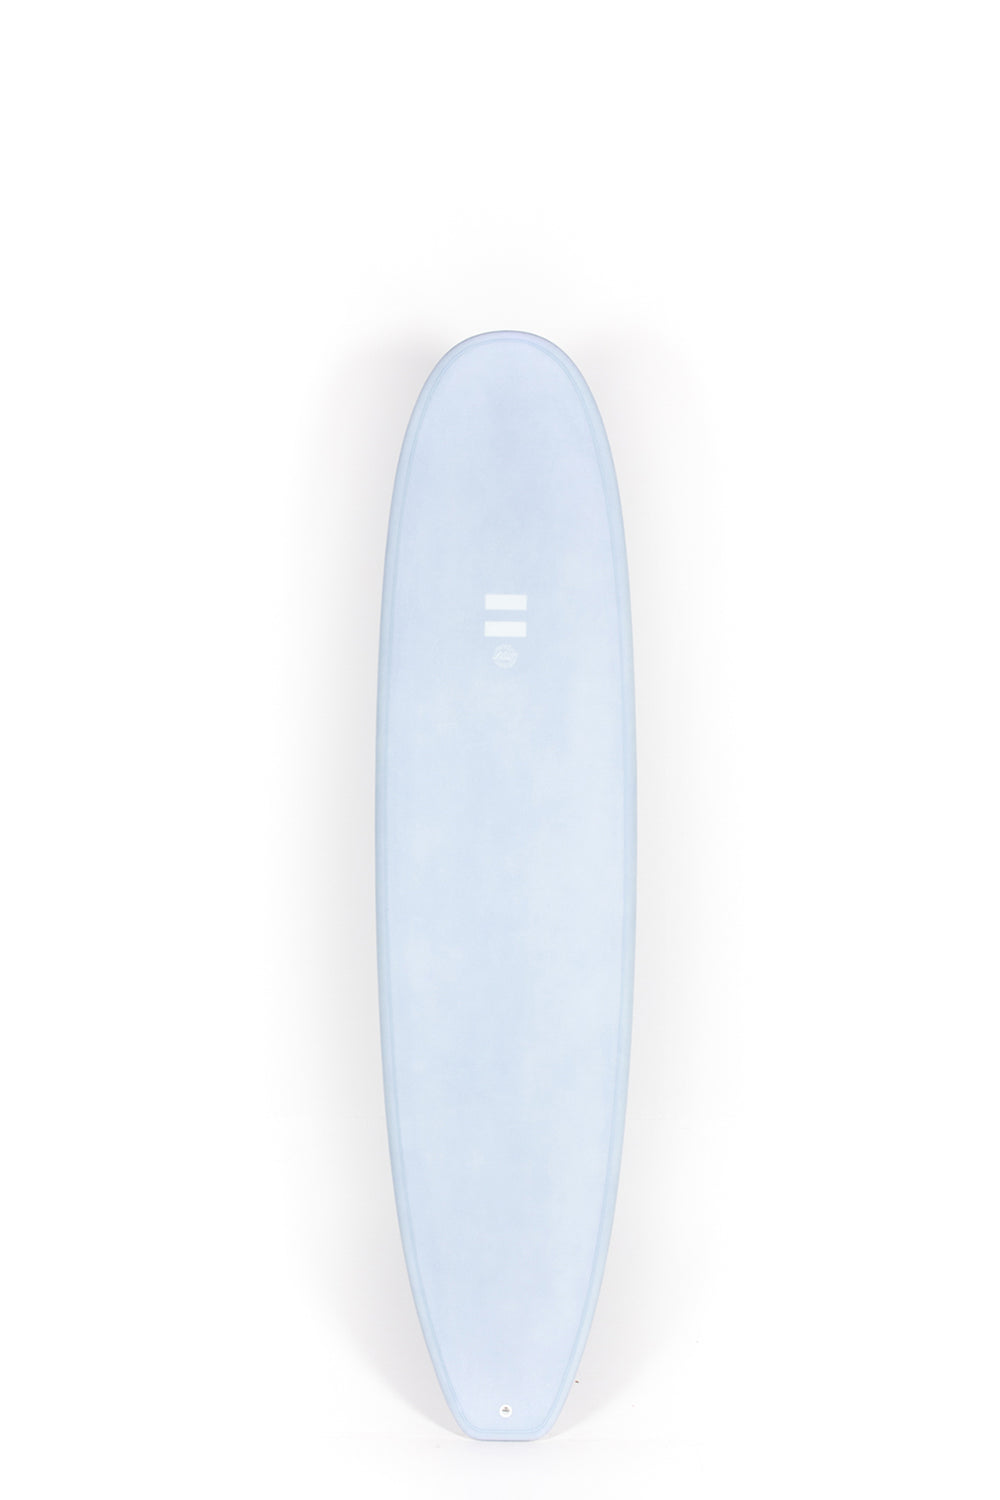 Pukas Surf Shop Indio Surfboards - MID LENGTH Light Blue - 7´0 x 21 3/8 x 2 7/8 - 49,40L